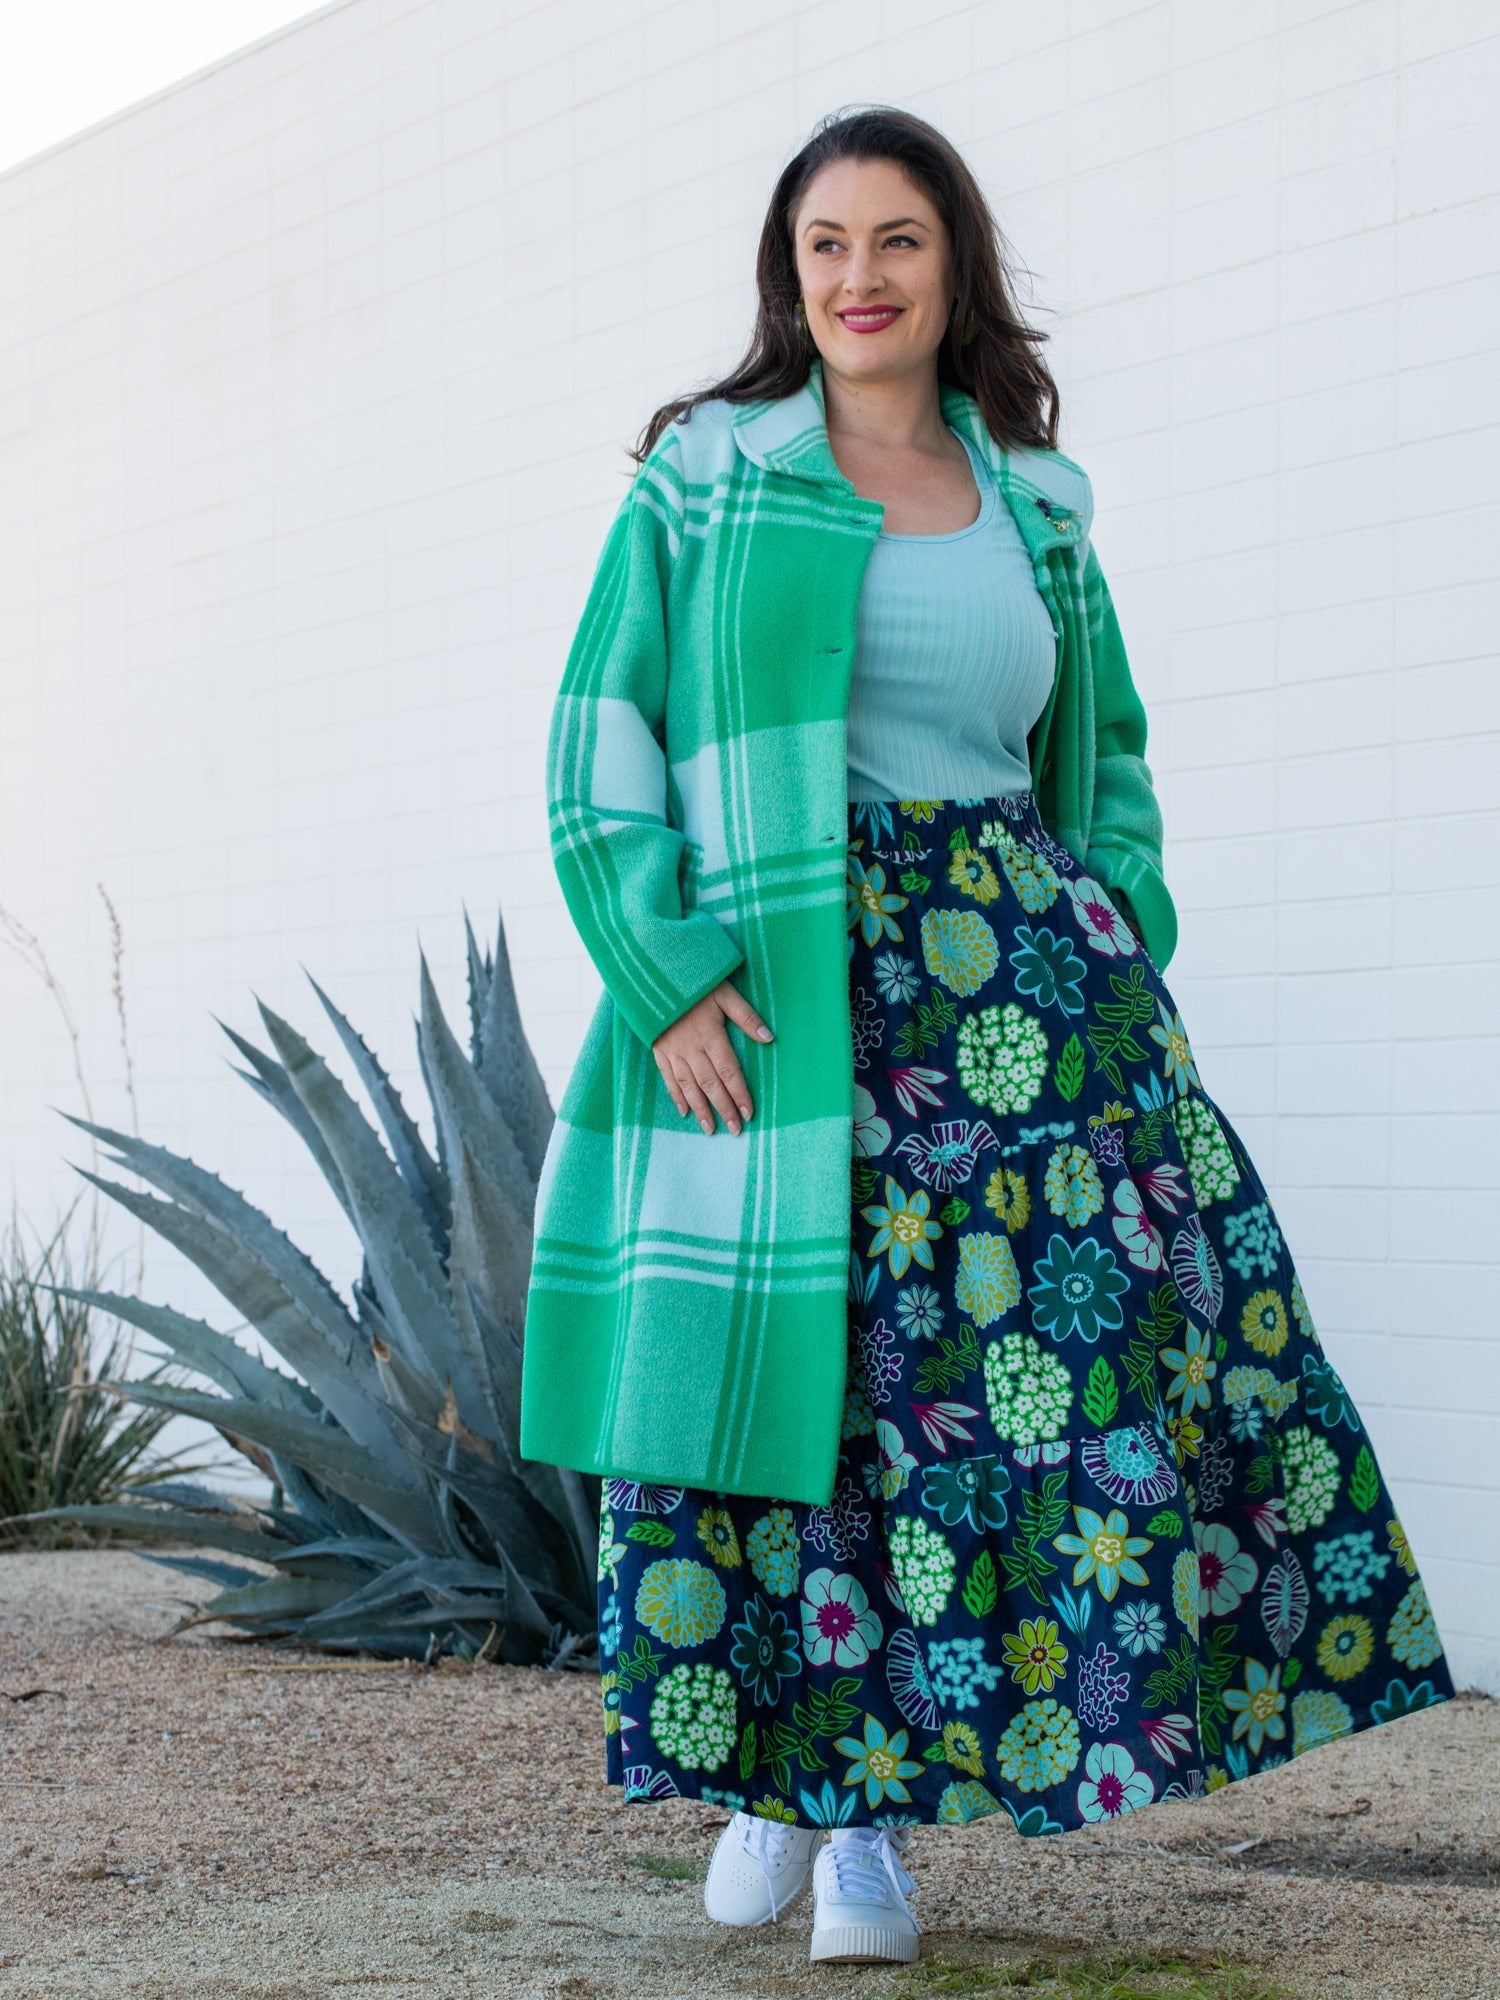 NATALIE coat Green Apple Plaid - Lesley Evers-Best Seller-coat-Imogen green 1